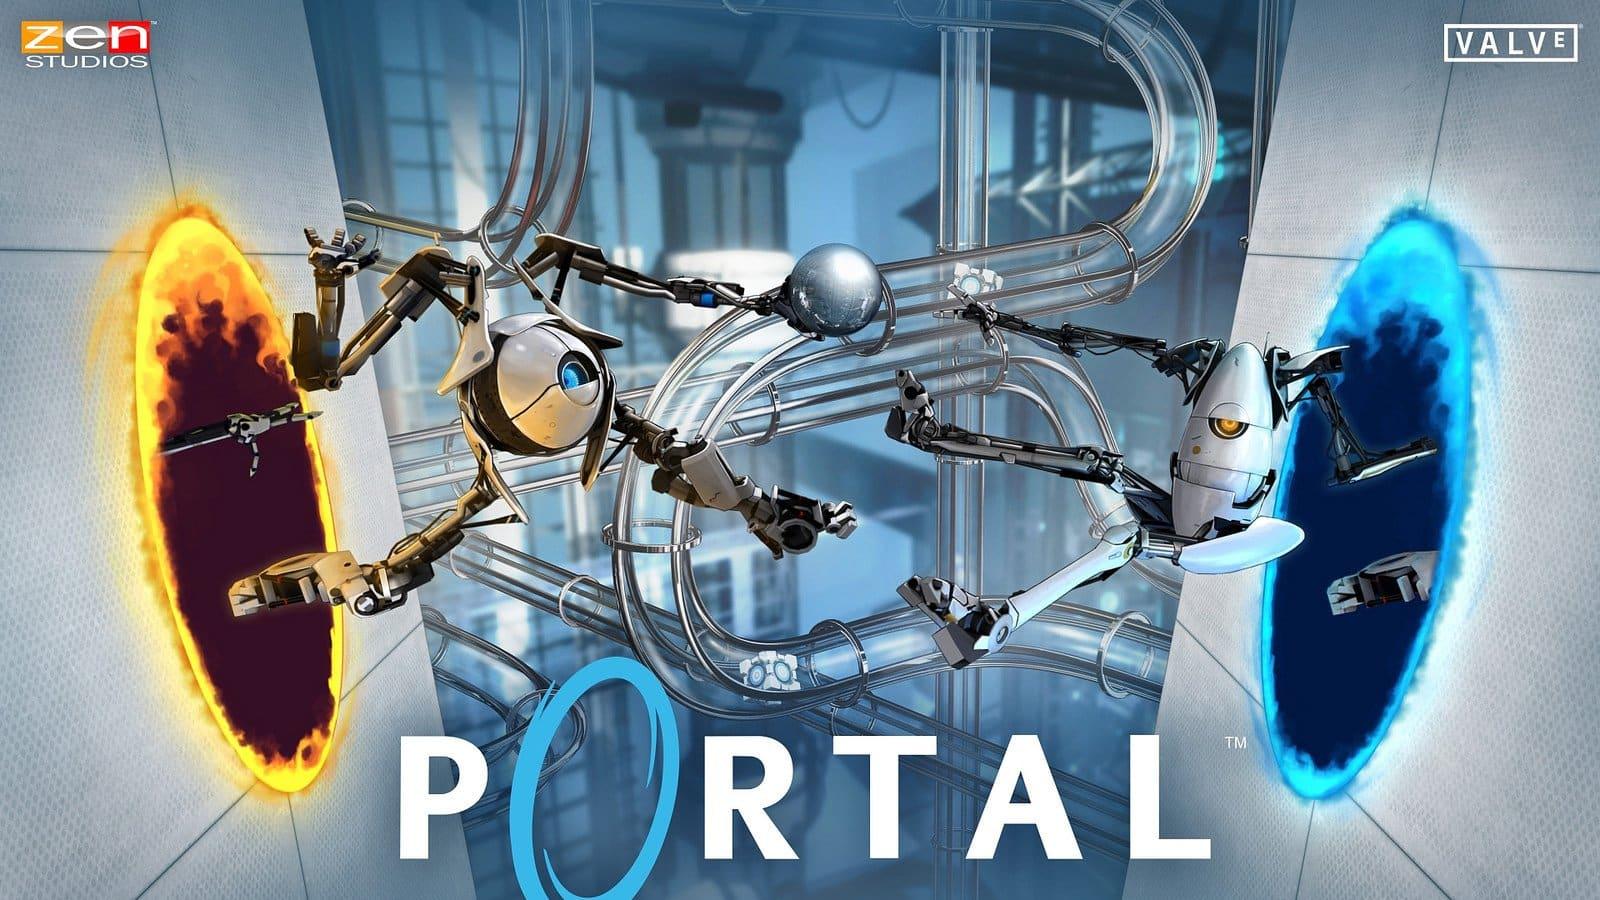 Portal adapté par J.J Abrams